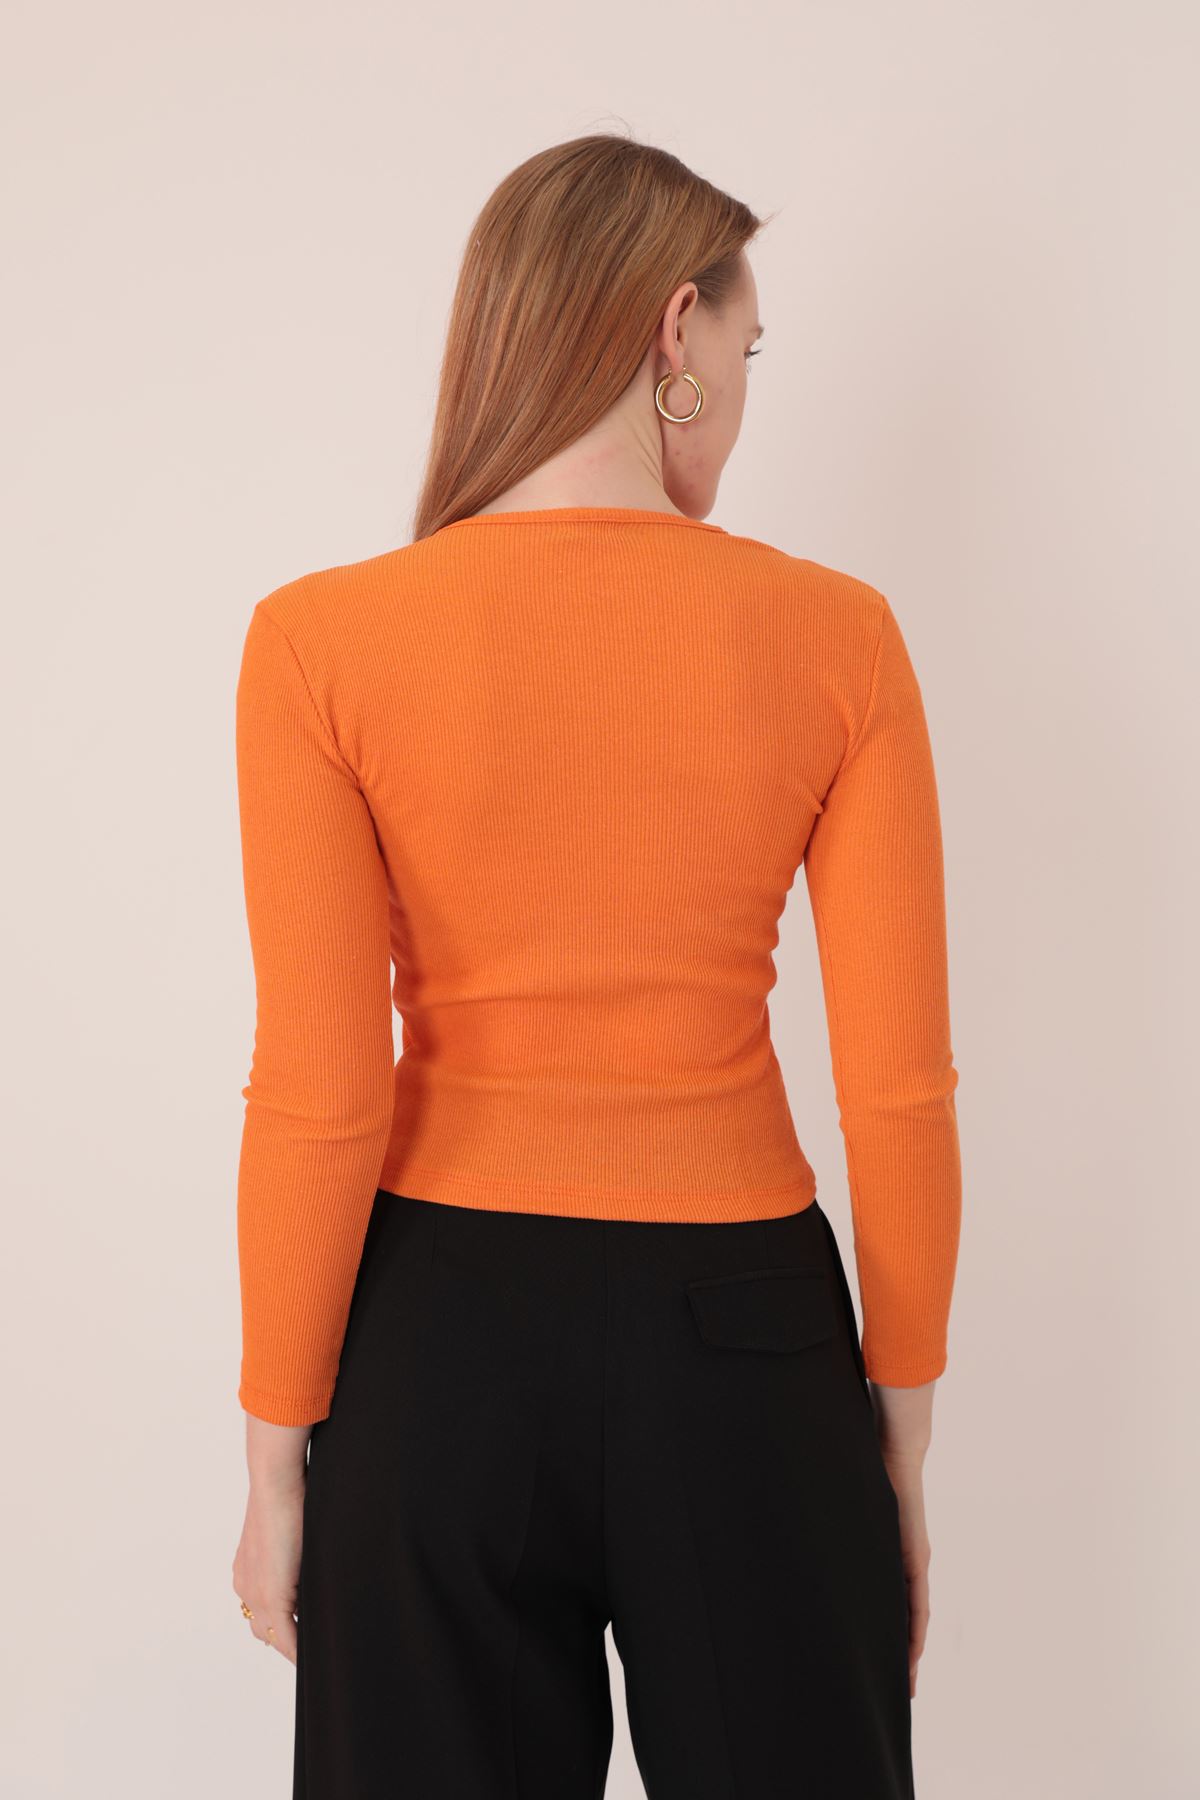 Camisole Ткань Плечо Декольте Женская Блузка-Оранжевый